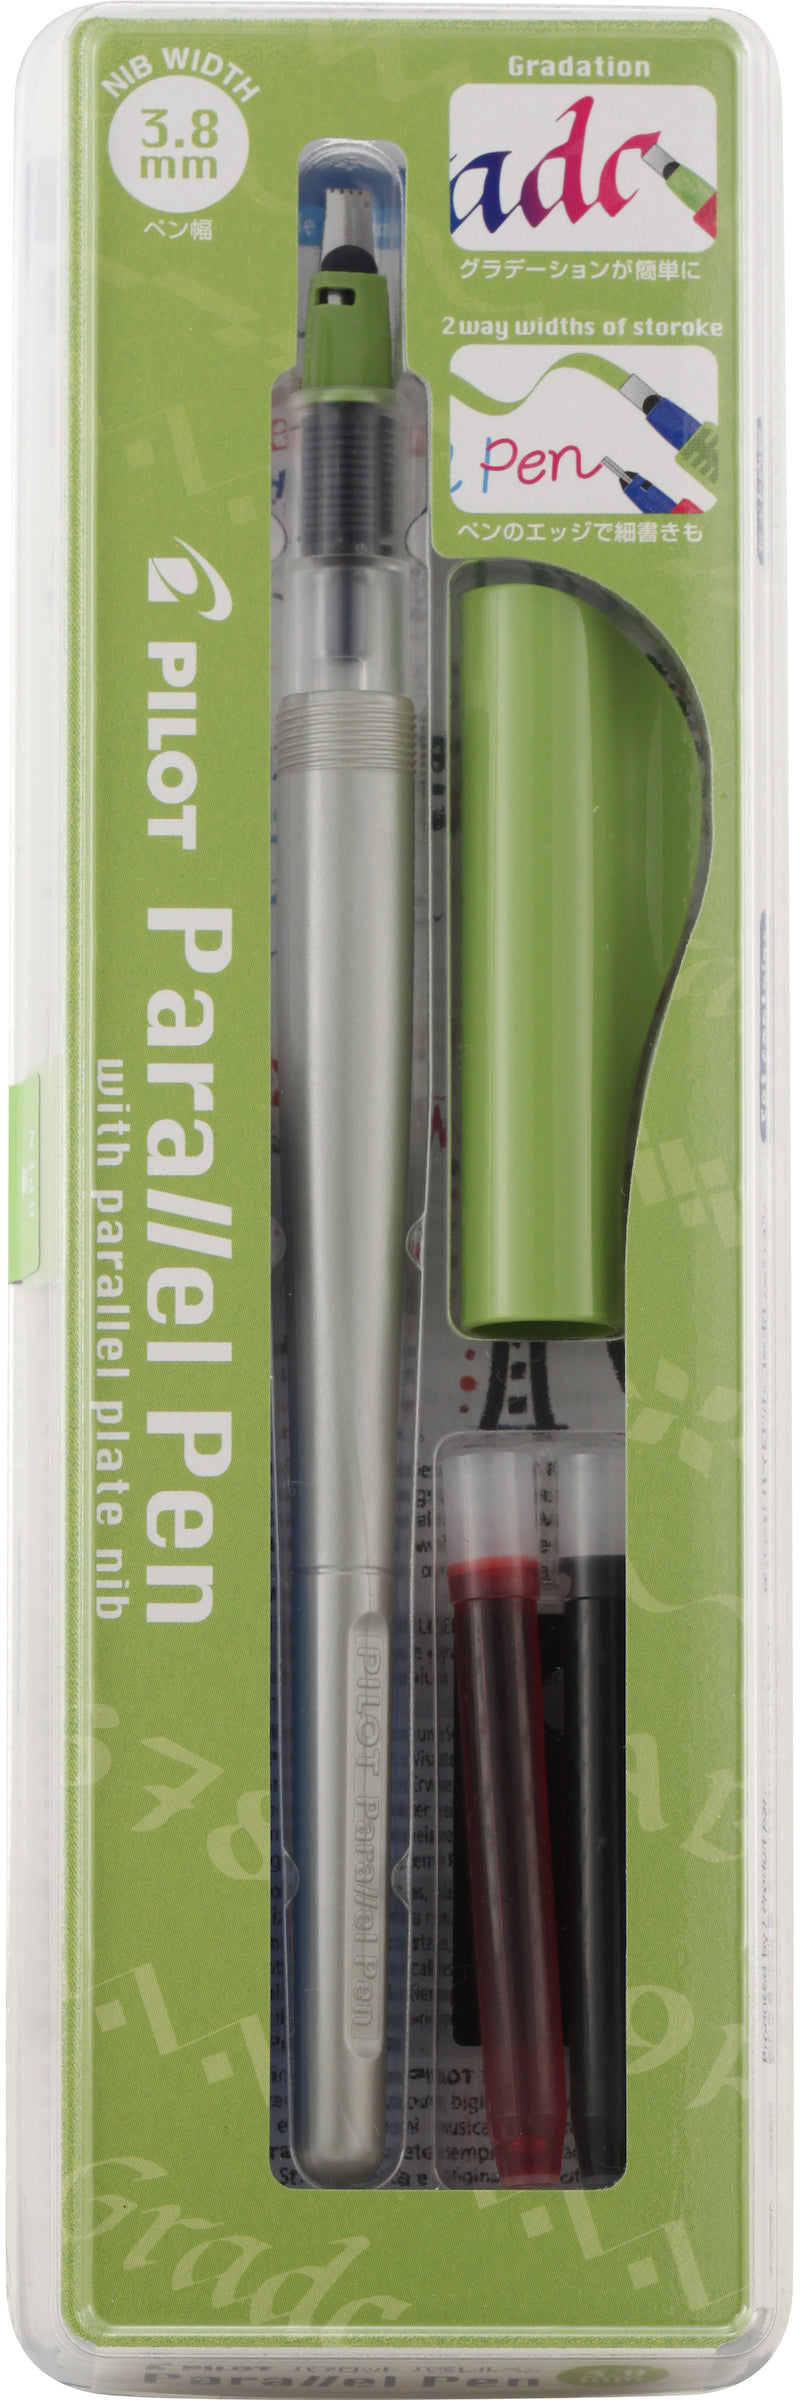 Pilot Parallel Pen Set with Cartridge (3.8MM), Japan